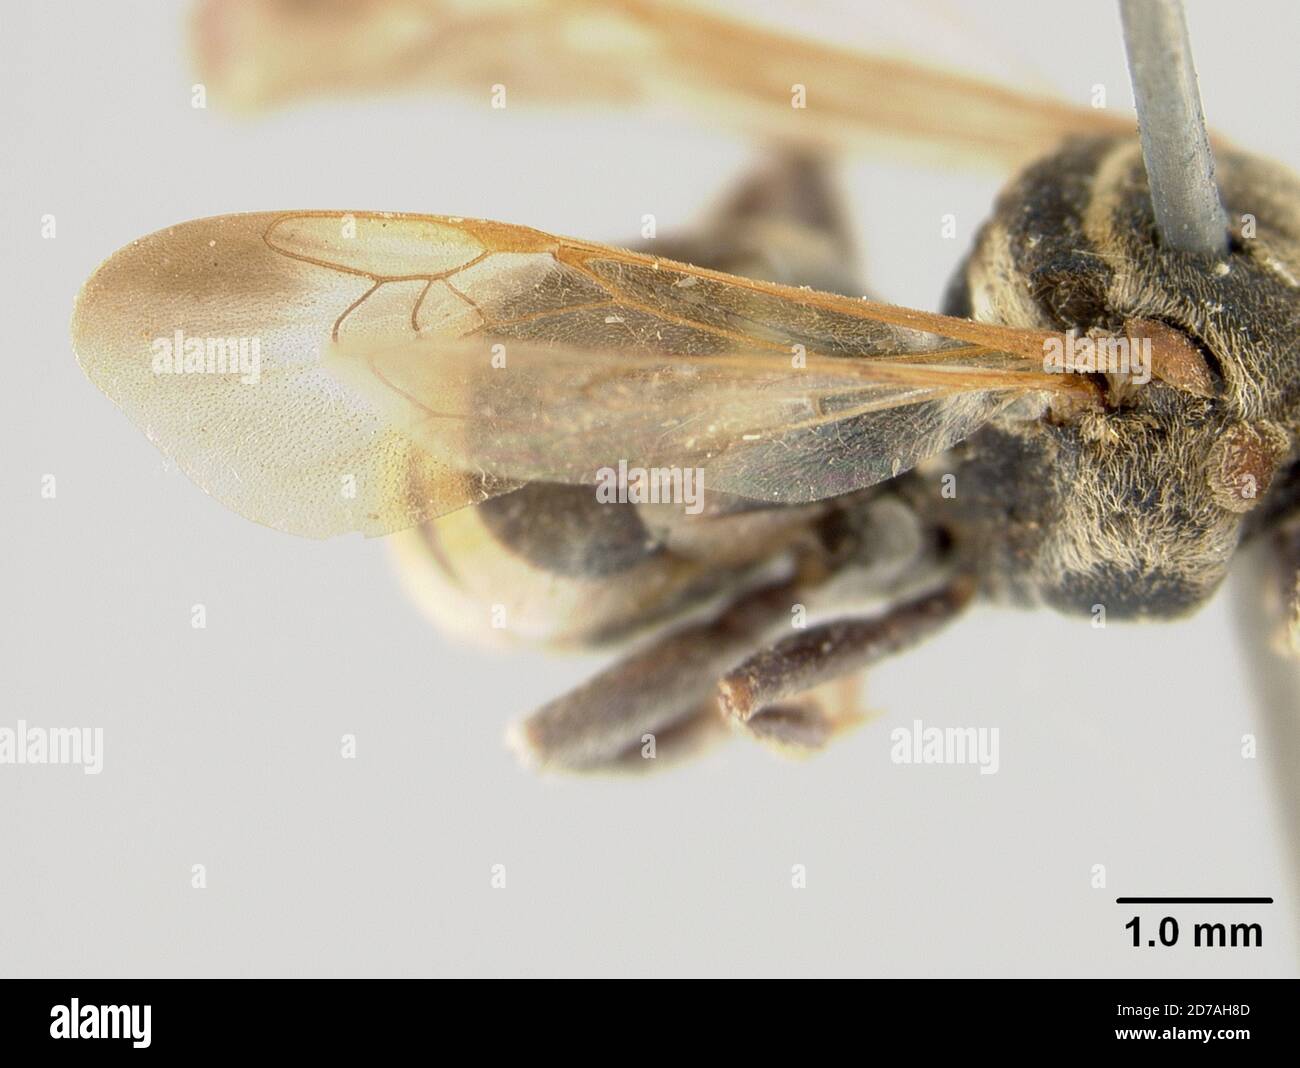 Pinned, Ecuador, Epeolus xanthurus Cockerell, 1917, Animalia, Arthropoda, Insecta, Hymenoptera, Apidae Stock Photo